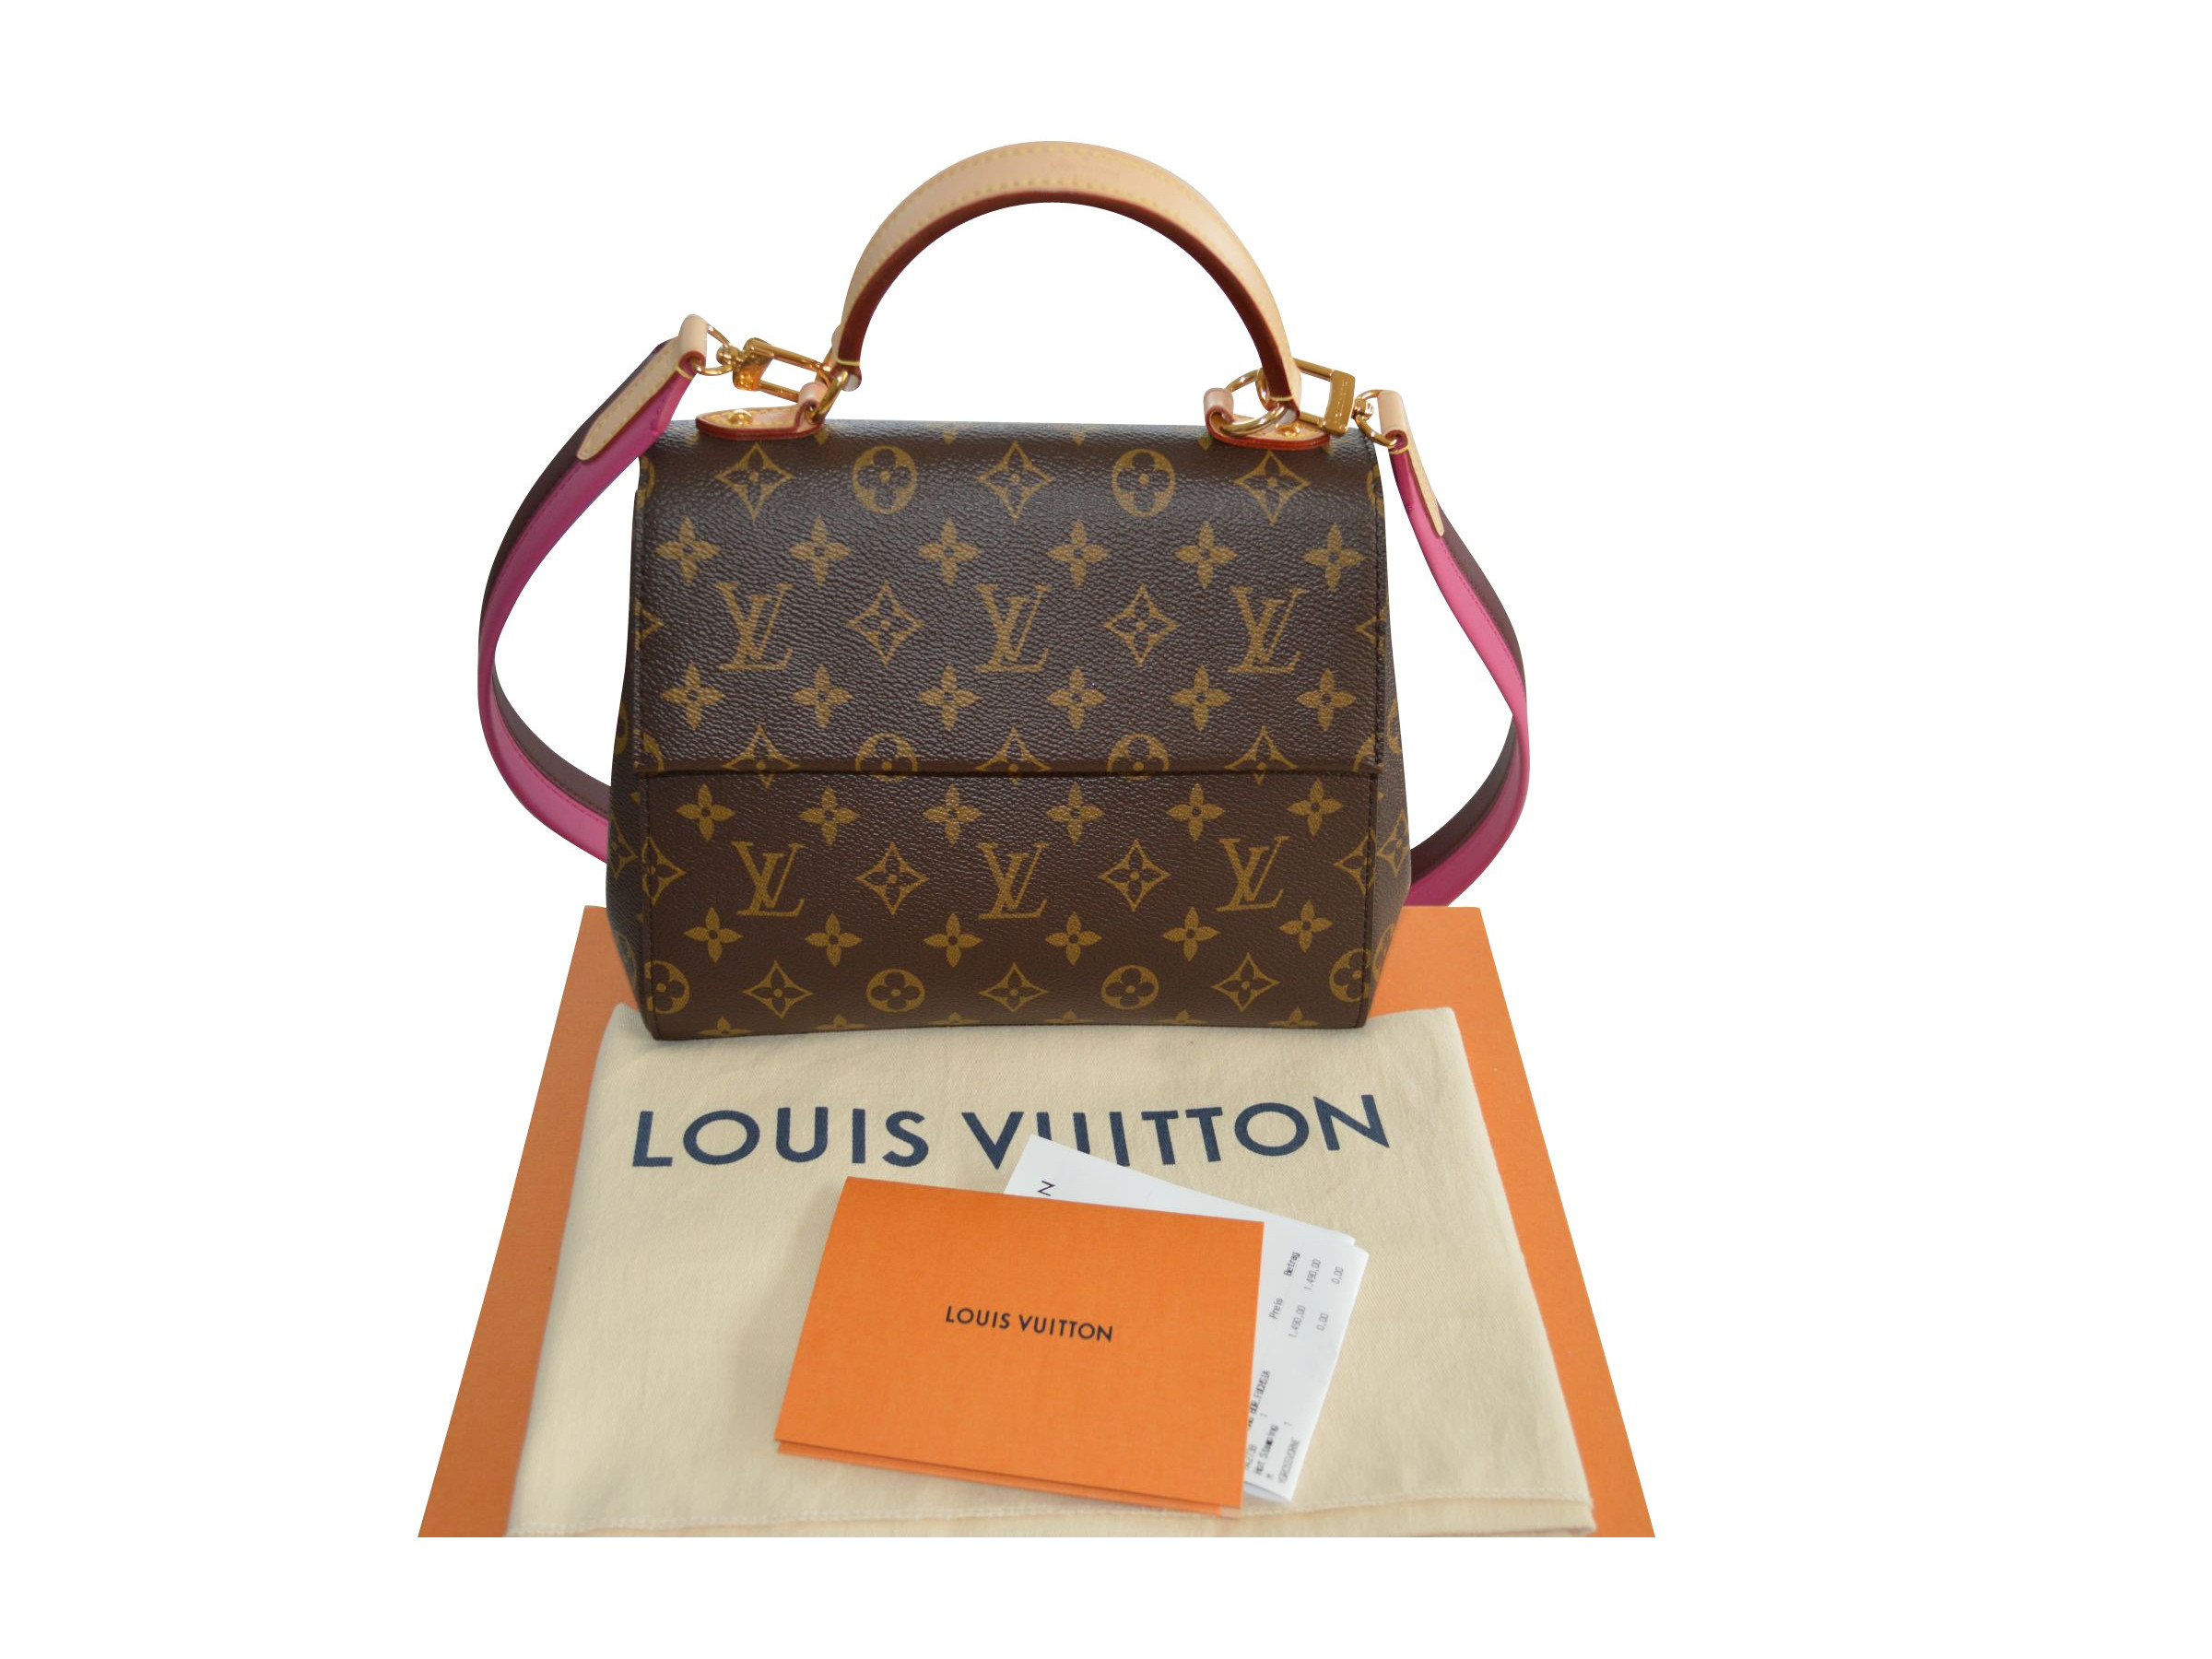 VERKAUFT - Louis Vuitton * NP 1490 € * Cluny BB Monogram Canvas Tasche * wie NEU * mit ...